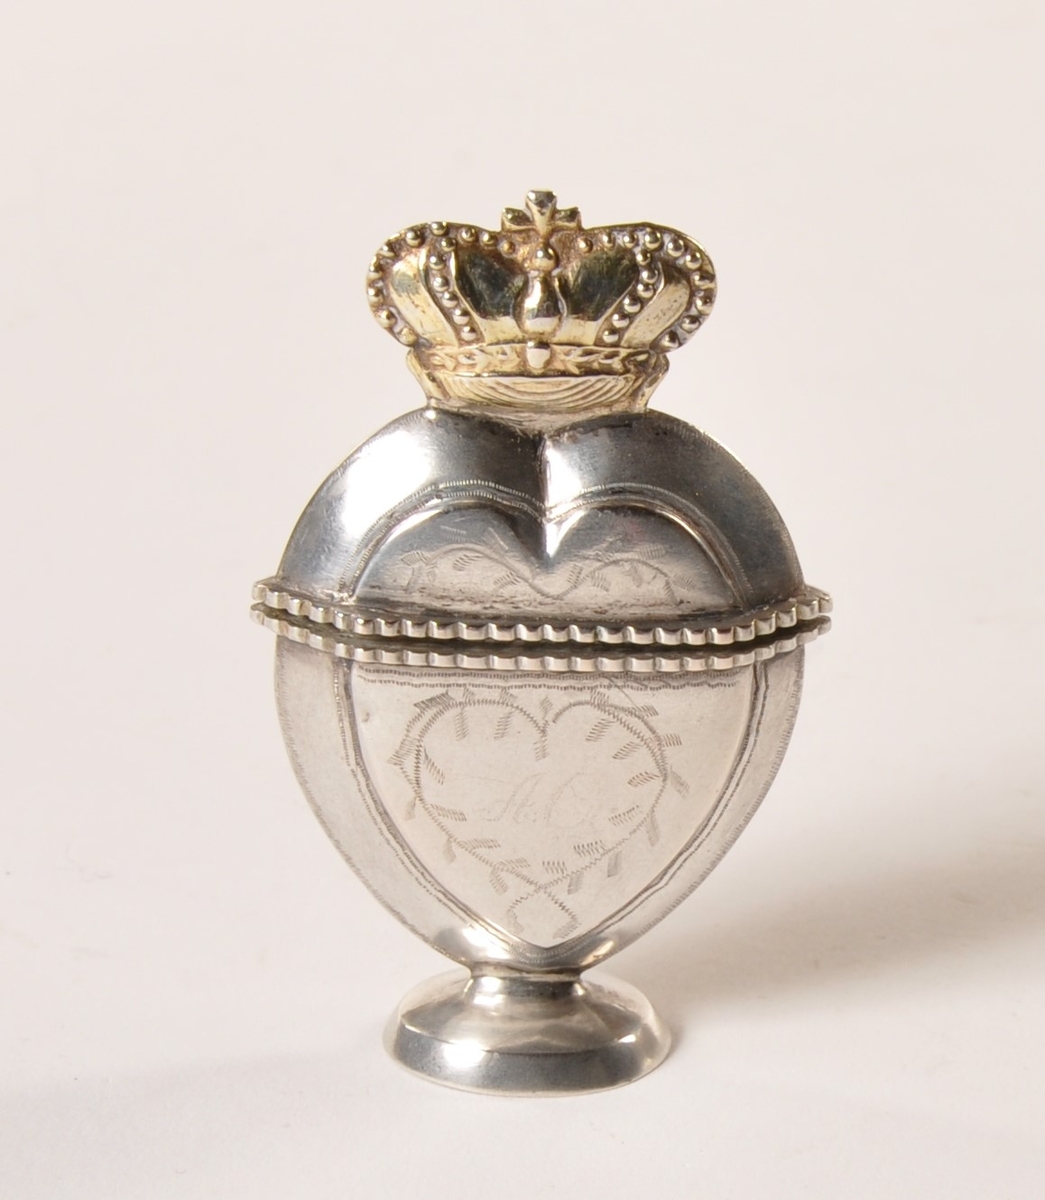 Hjerteformet luktevannshus i sølv  med henglset lokk med  gullfarget krone. Stående på sokkel. Ingravert bladmønster.